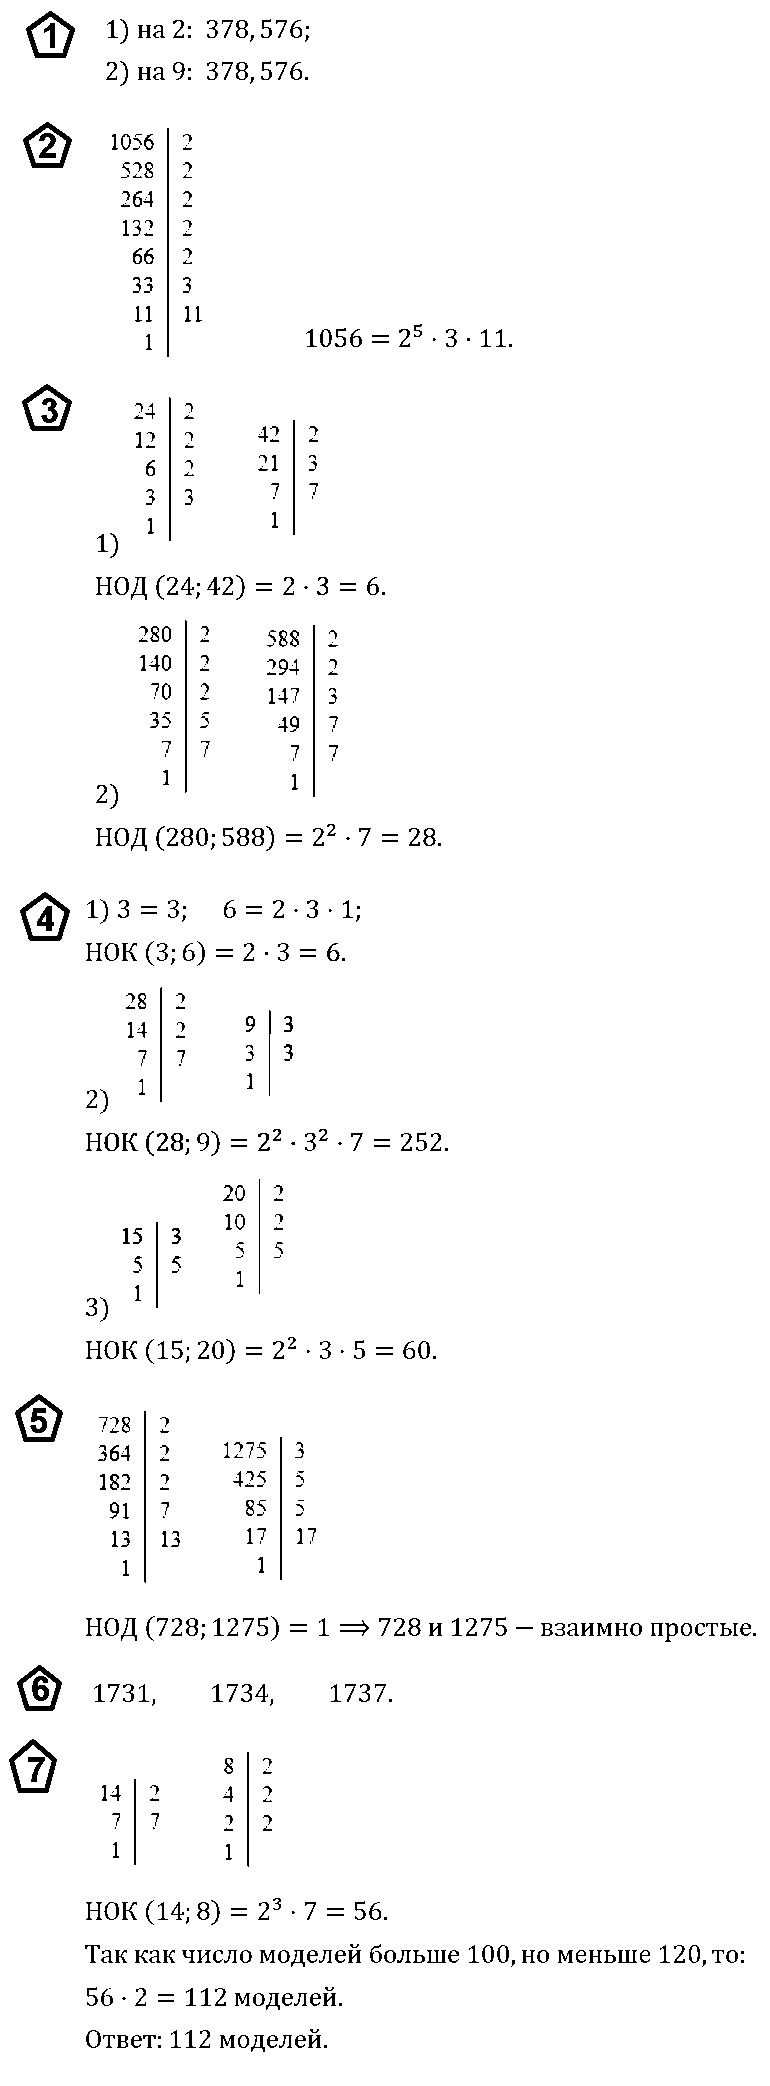 Контрольная работа по теме Роль простых чисел в математике